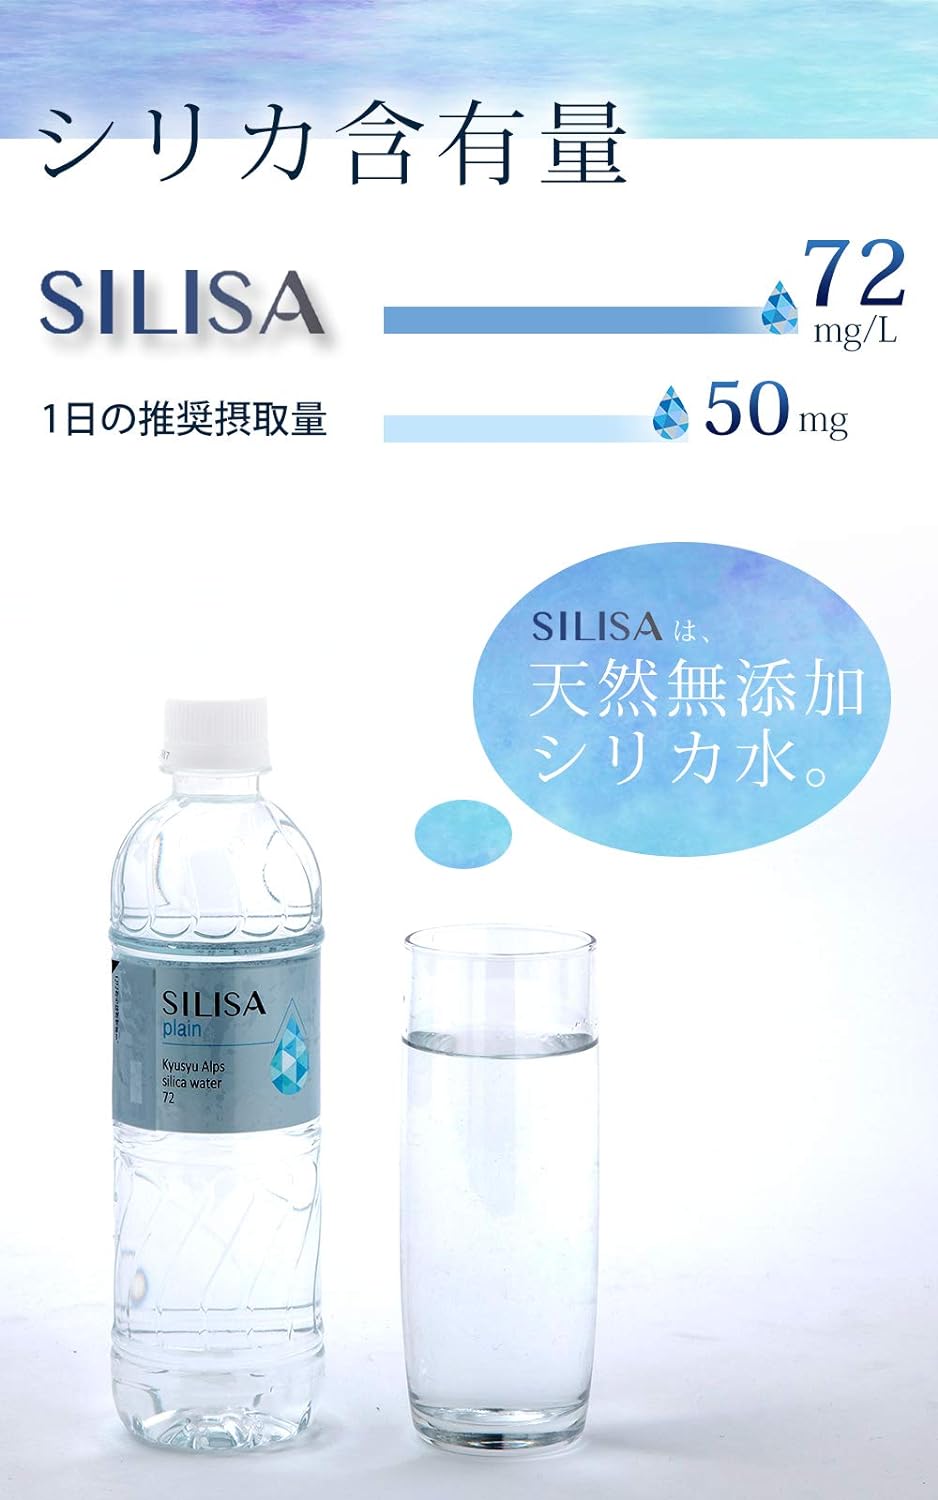 SILISAは天然無添加シリカ水